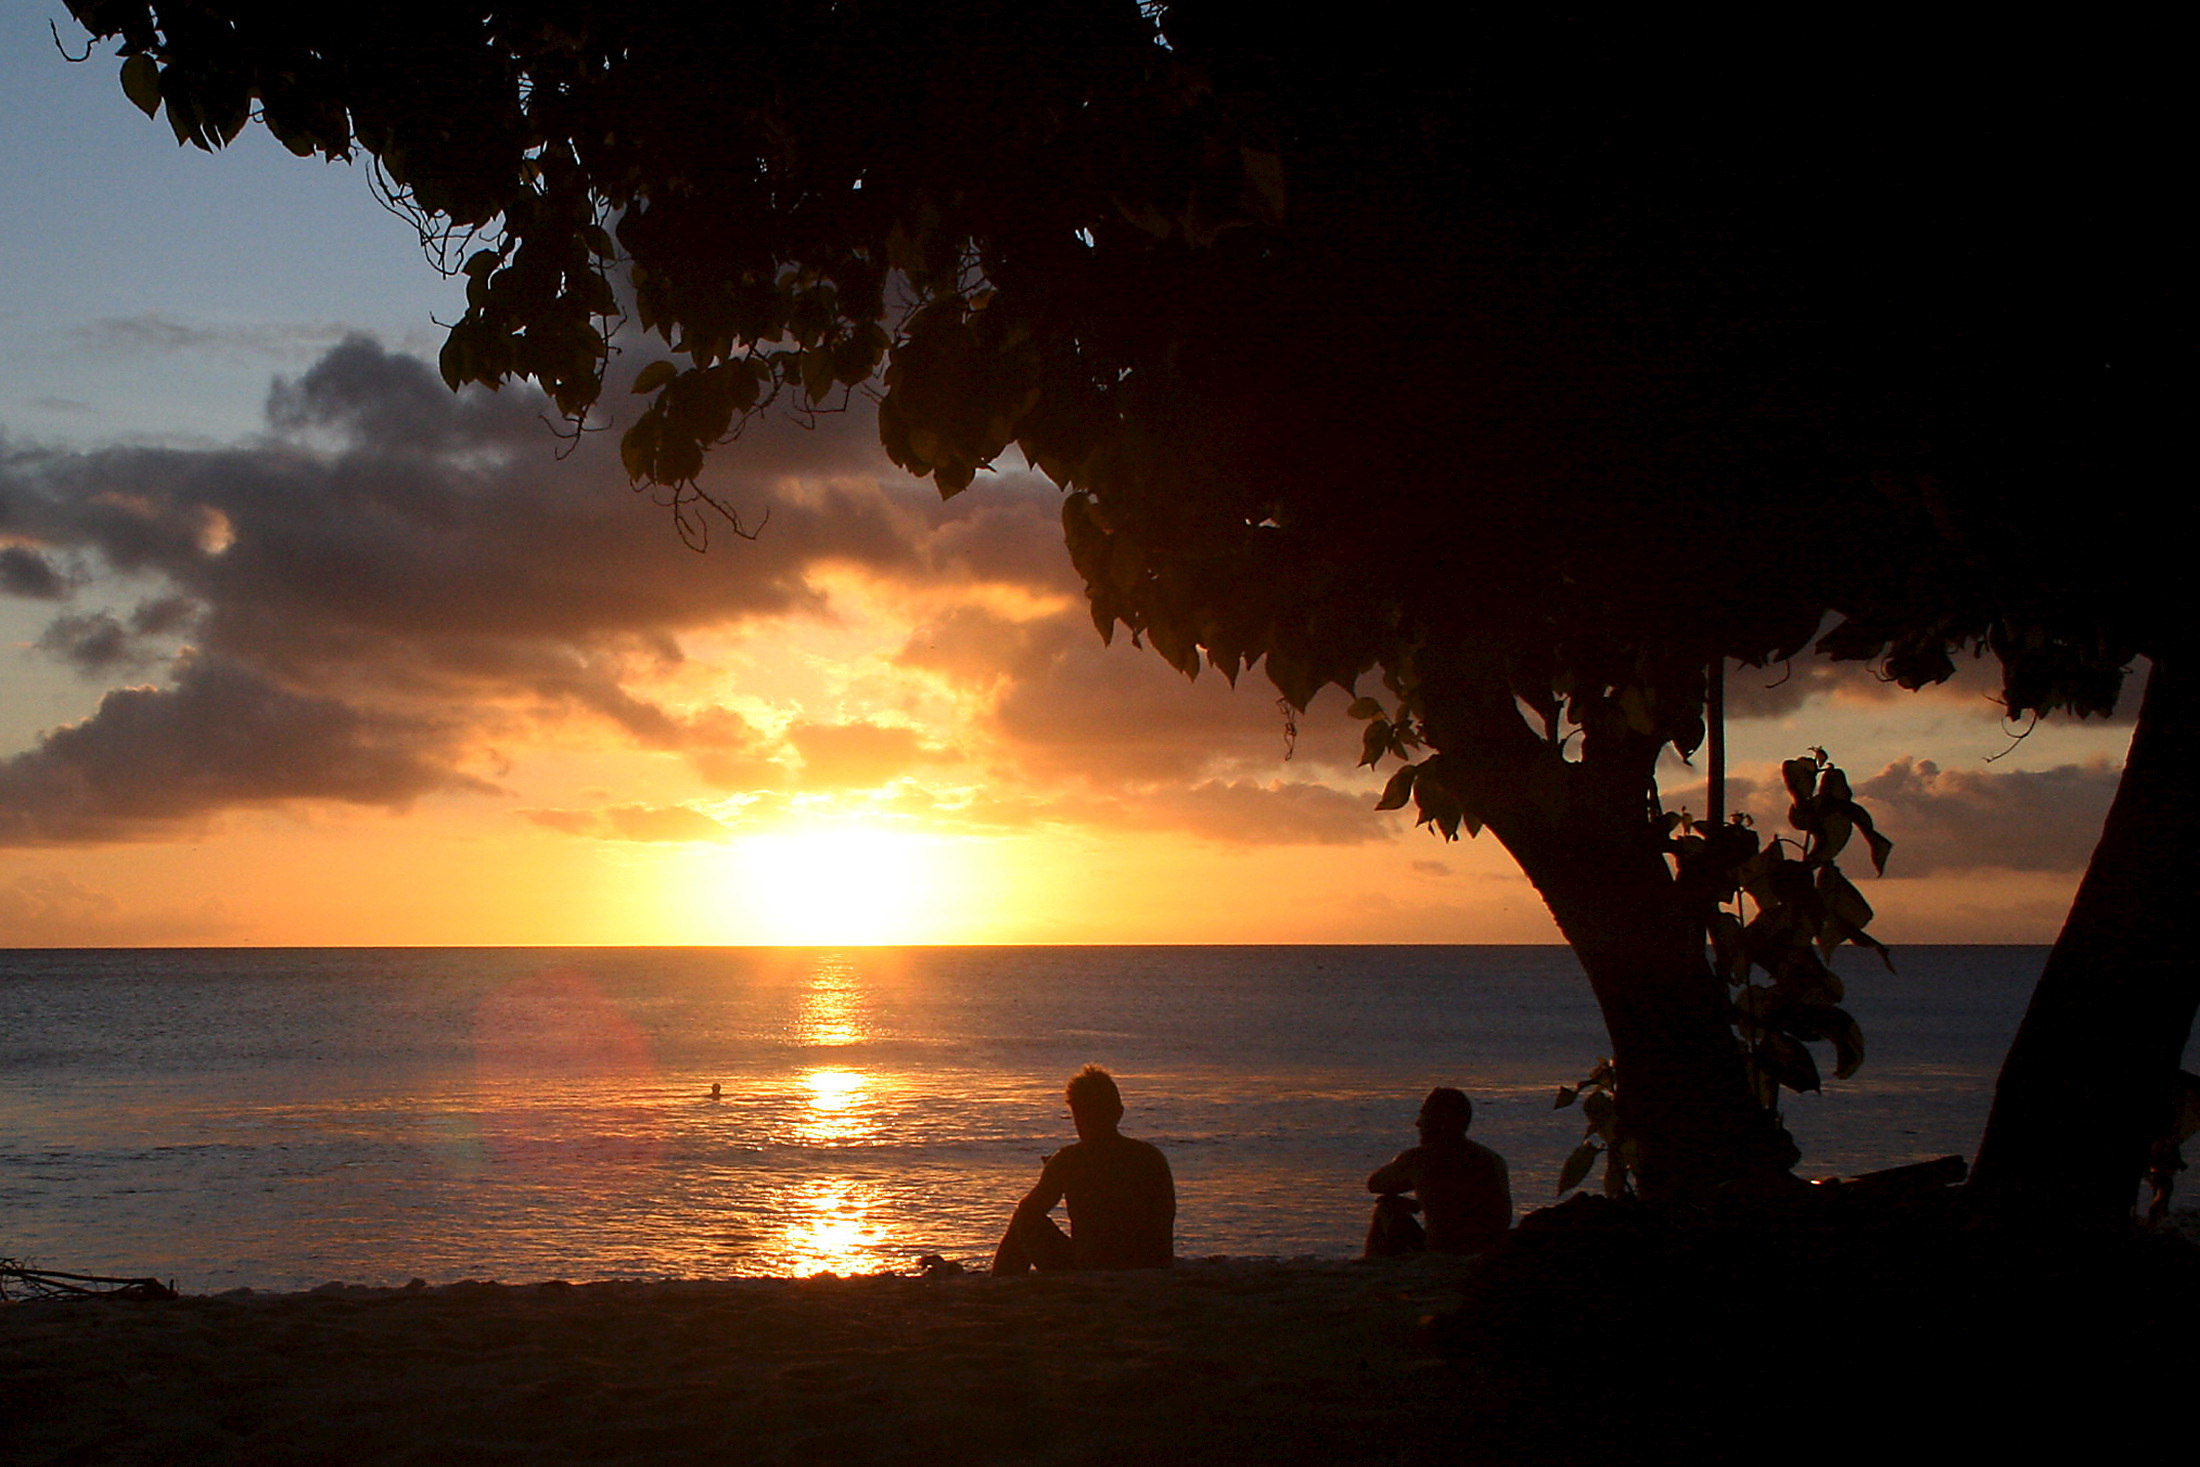 Les surfeurs regardent le soleil se coucher après avoir surfé le long de la côte de l'île de Kiritimati, qui fait partie de la nation insulaire du Pacifique de Kiribati